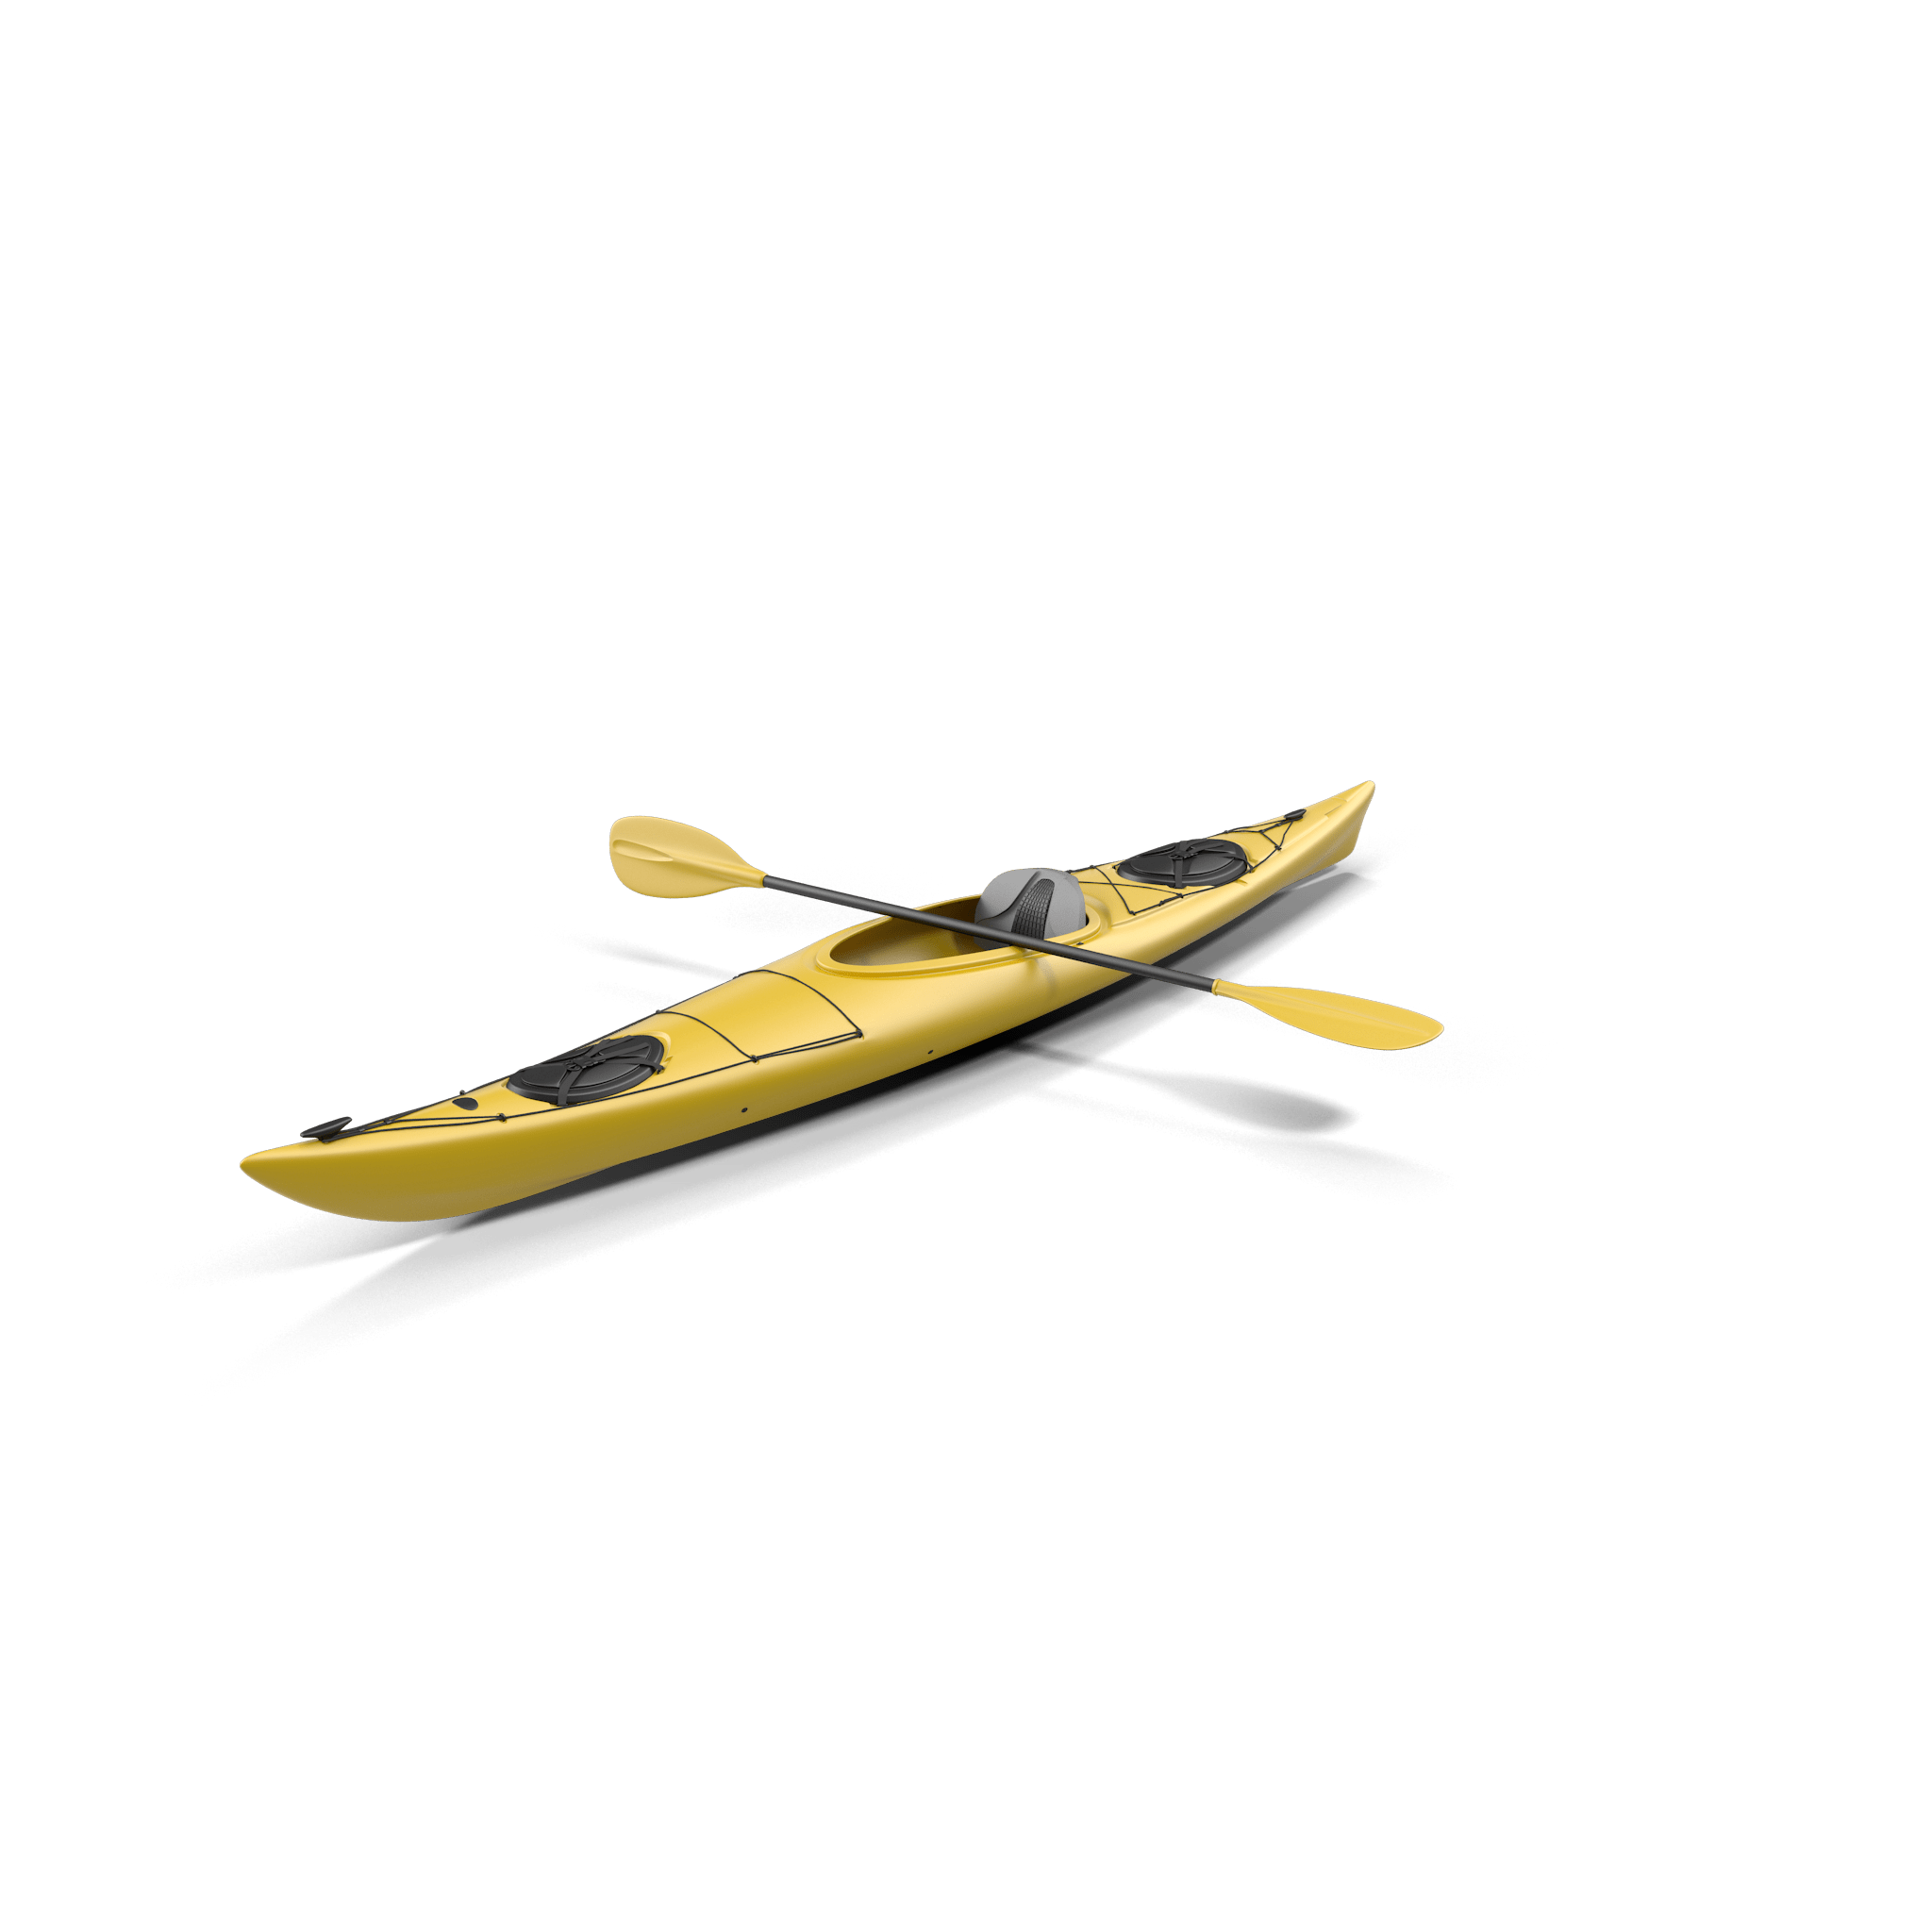 3D model of a kayak